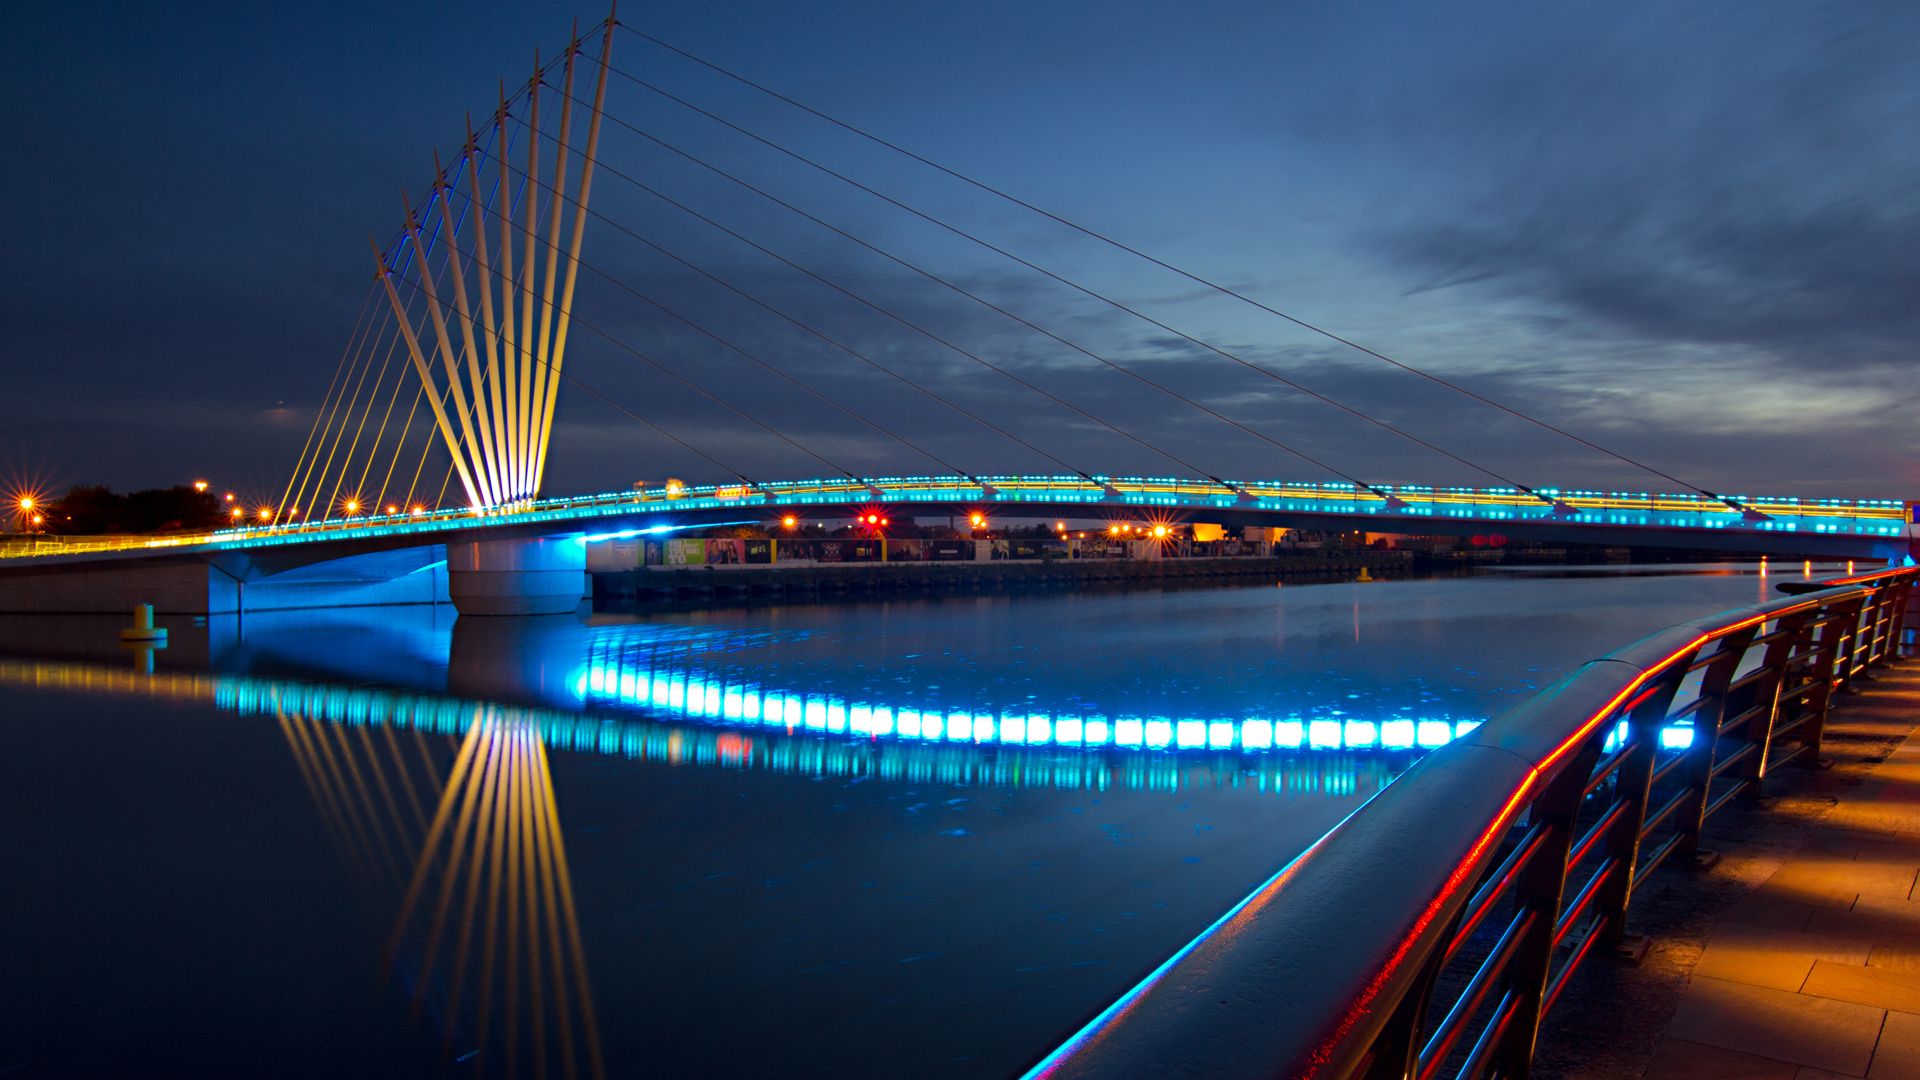 fond d'écran de génie civil hd,pont suspendu,pont,bleu,nuit,lien fixe